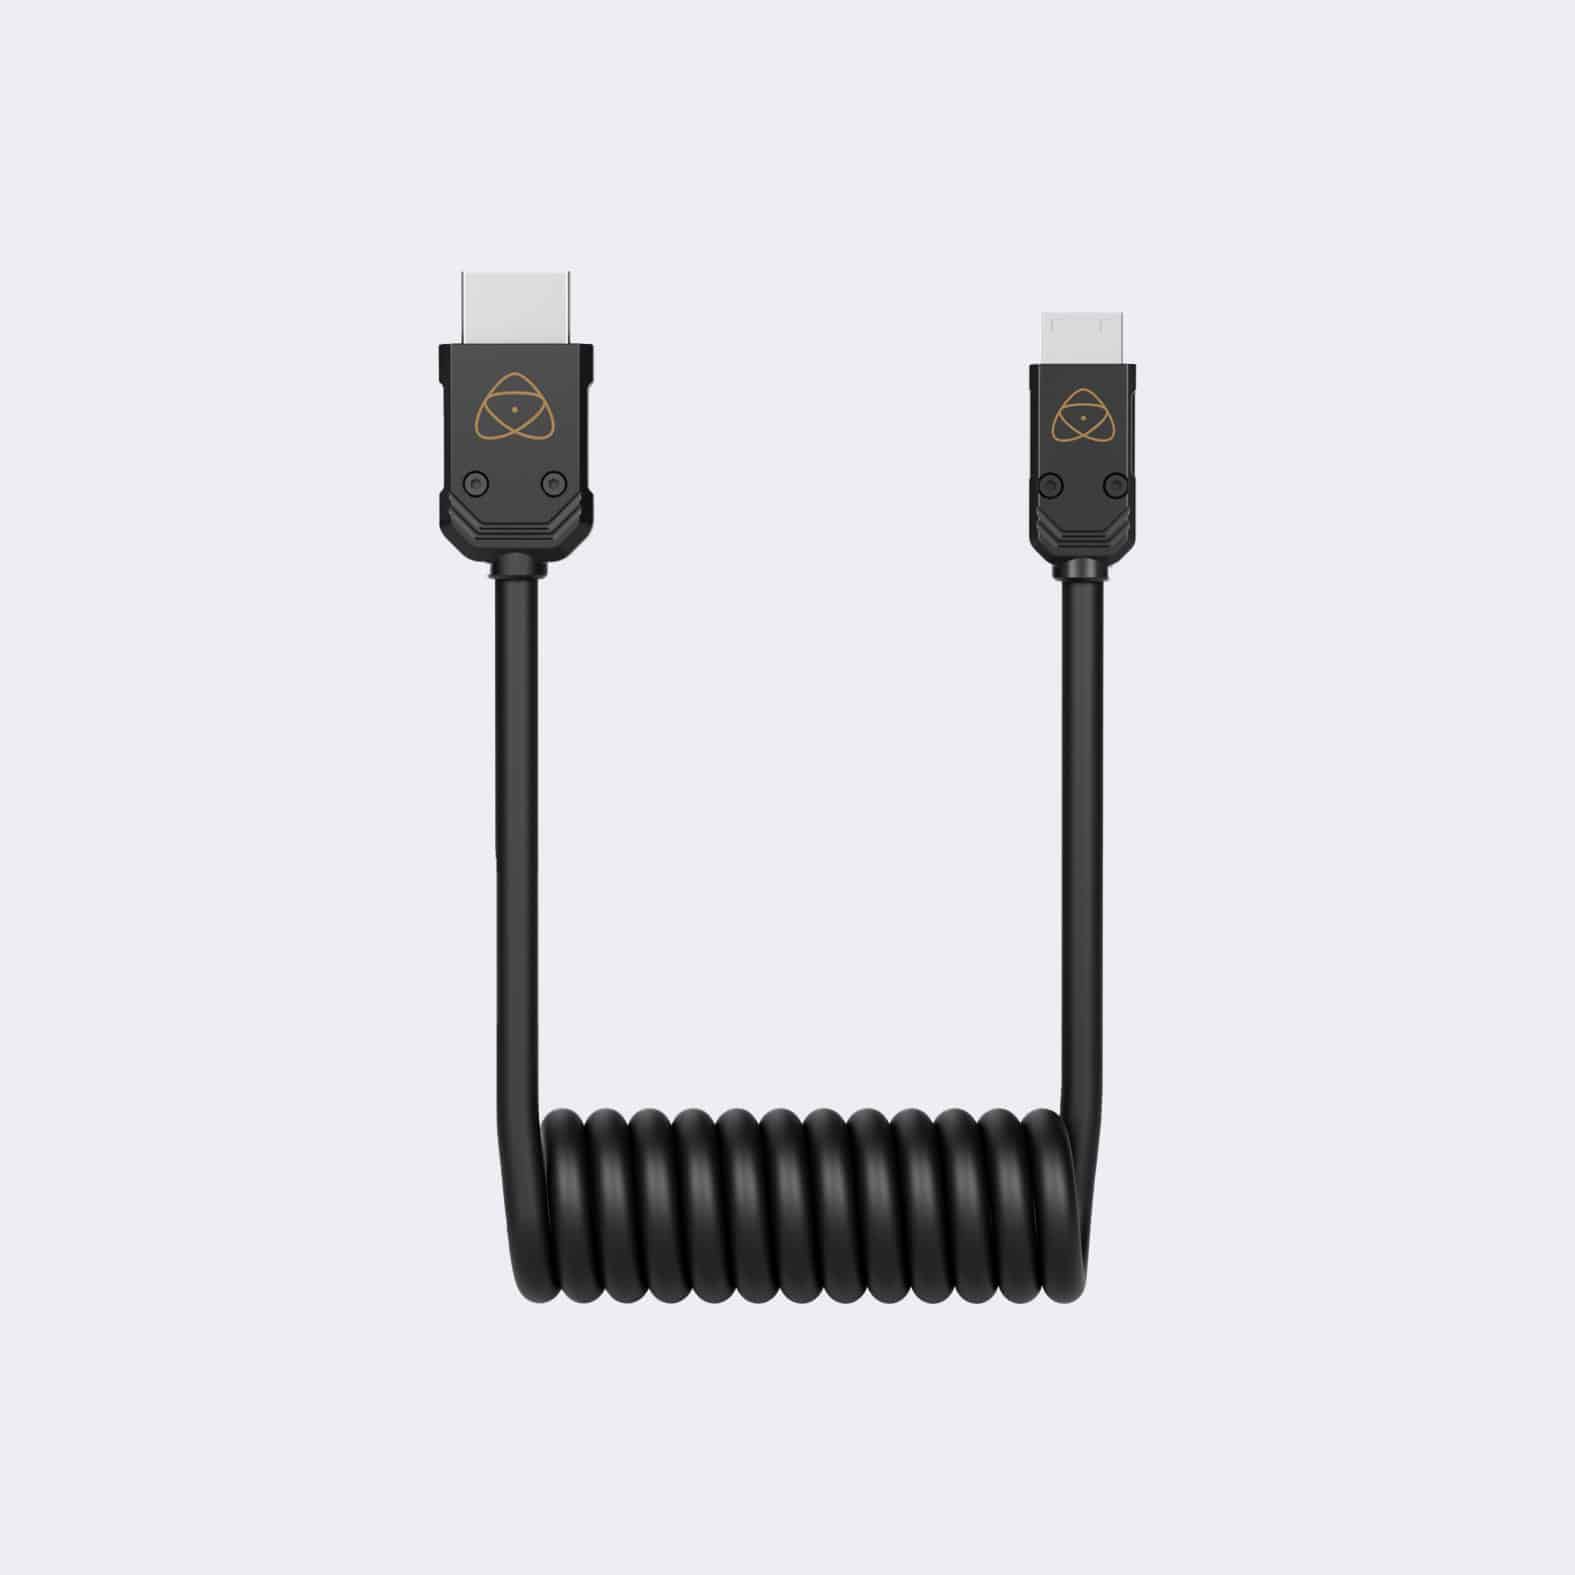 Mini HDMI 4K60p Cable (30cm)